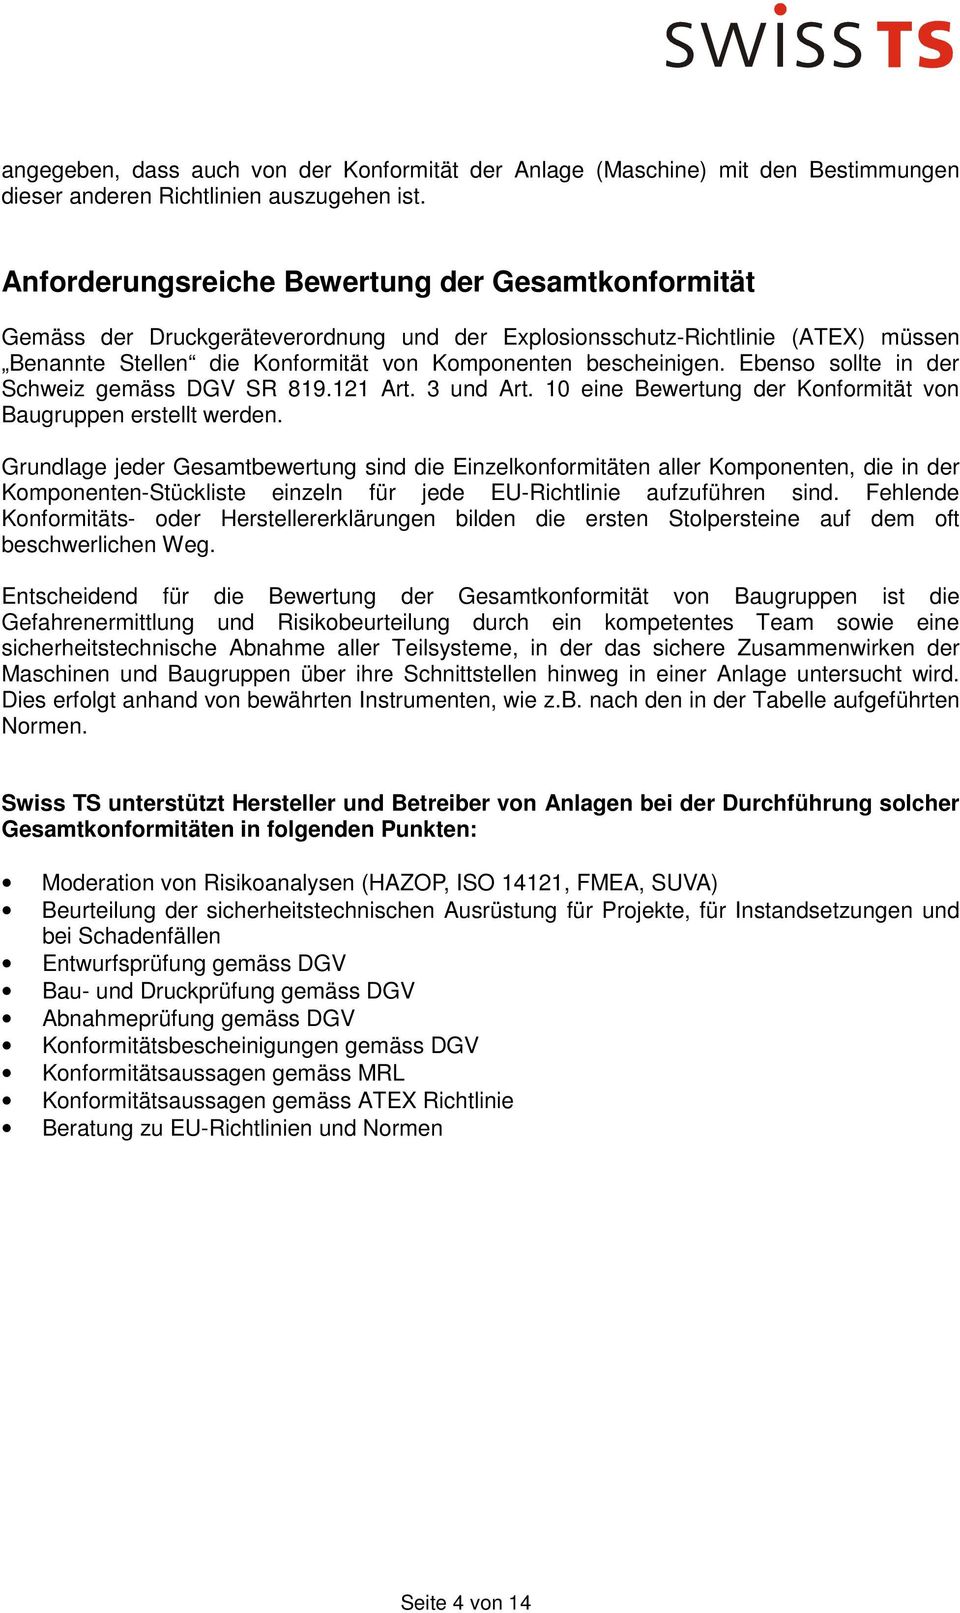 Ebenso sollte in der Schweiz gemäss DGV SR 819.121 Art. 3 und Art. 10 eine Bewertung der Konformität von Baugruppen erstellt werden.